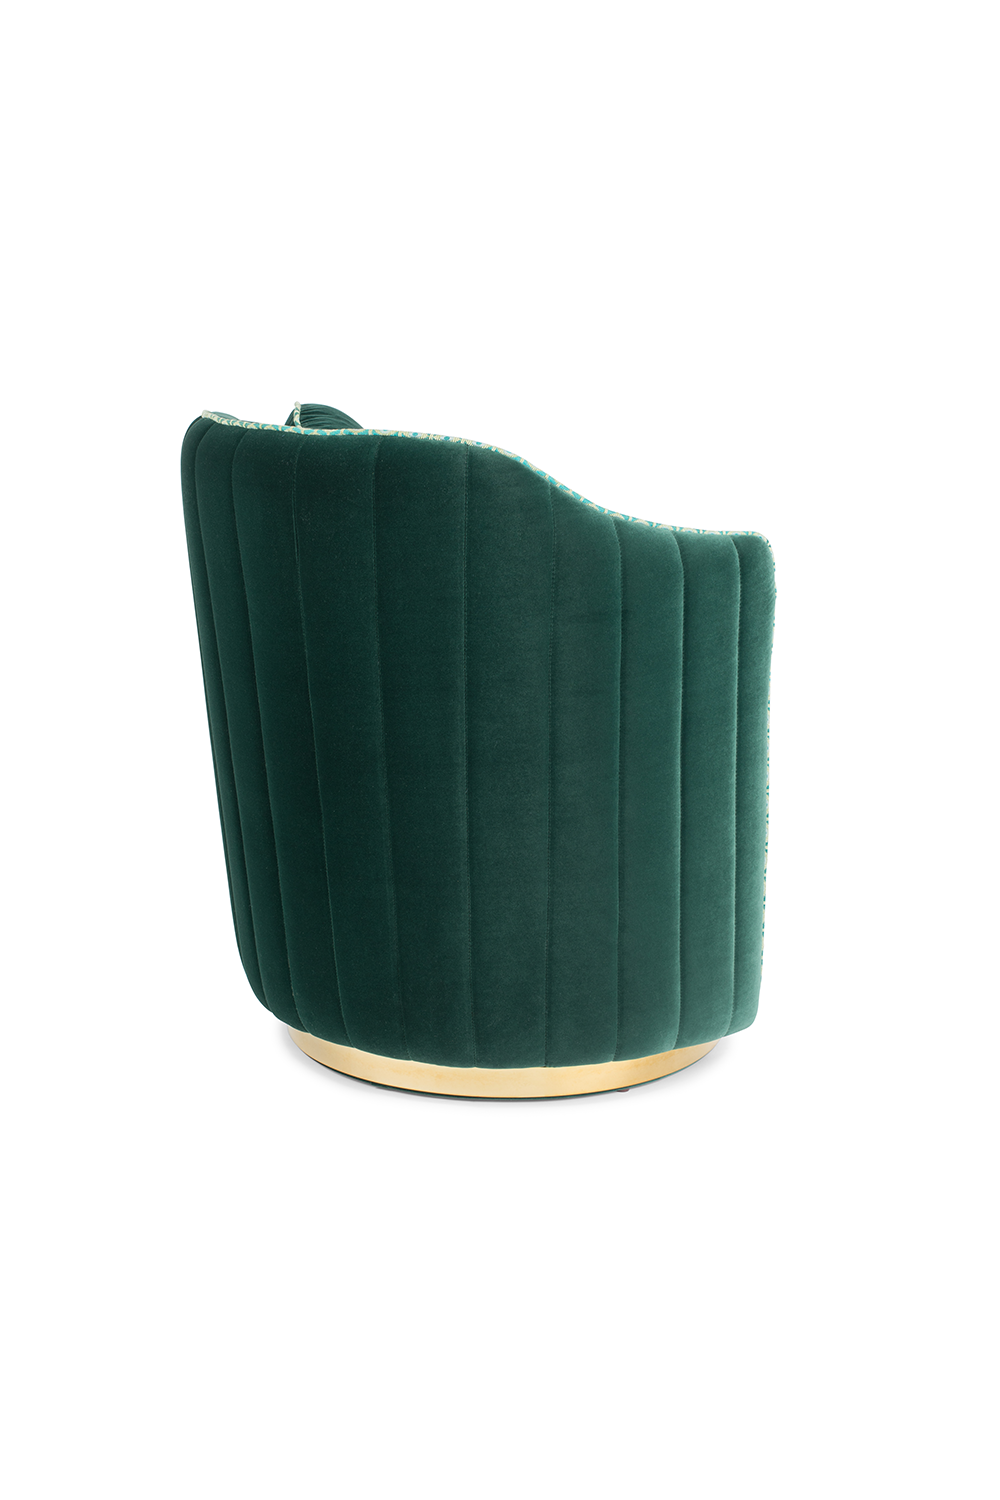 SASSY GRANNY Loungesessel in Grün präsentiert im Onlineshop von KAQTU Design AG. Sessel ist von Bold Monkey